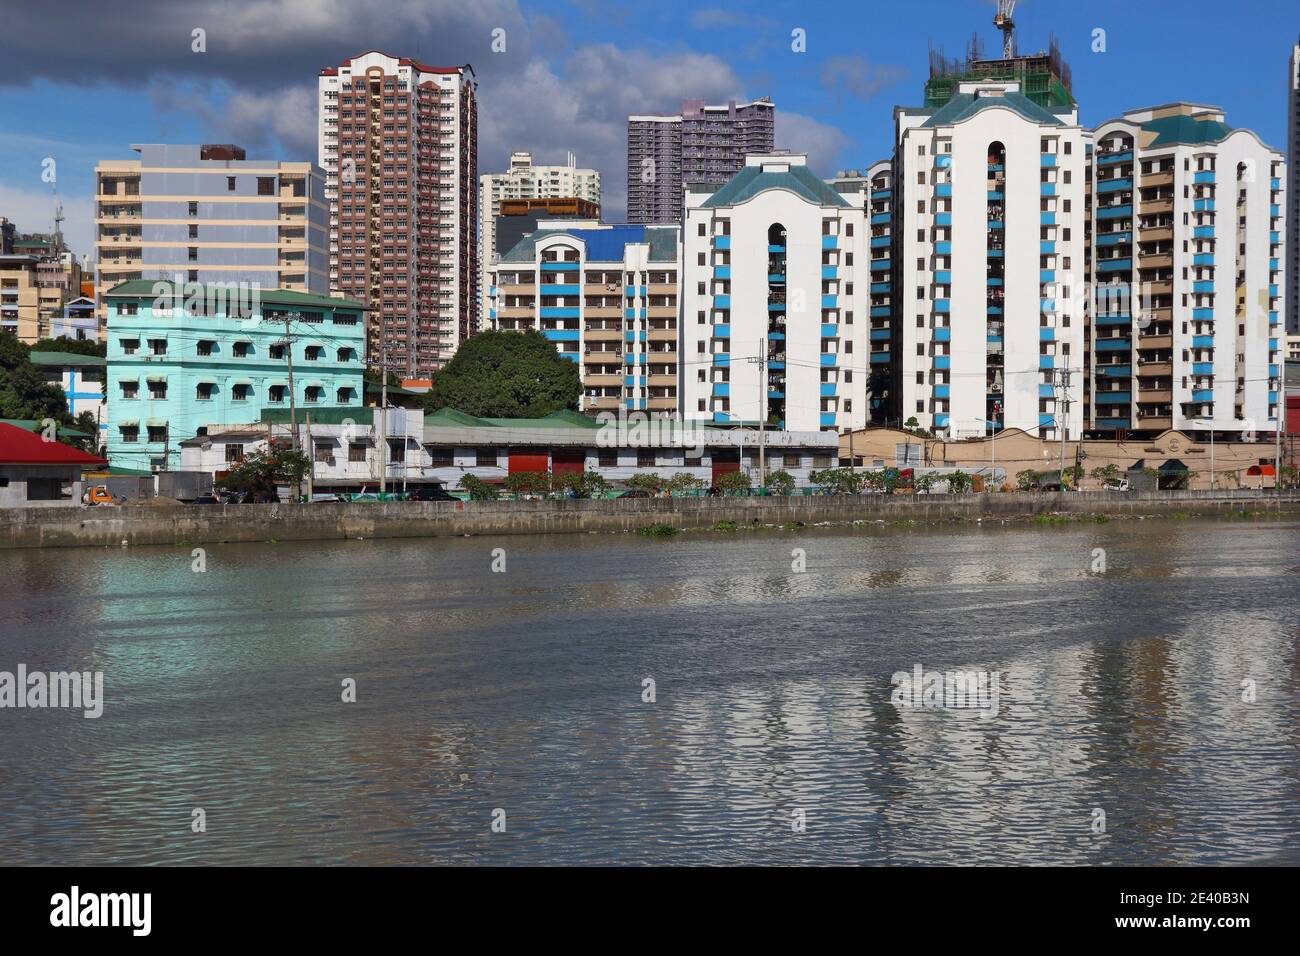 La ville de Manille aux Philippines. Les tours d'habitation et la rivière Pasig. Banque D'Images